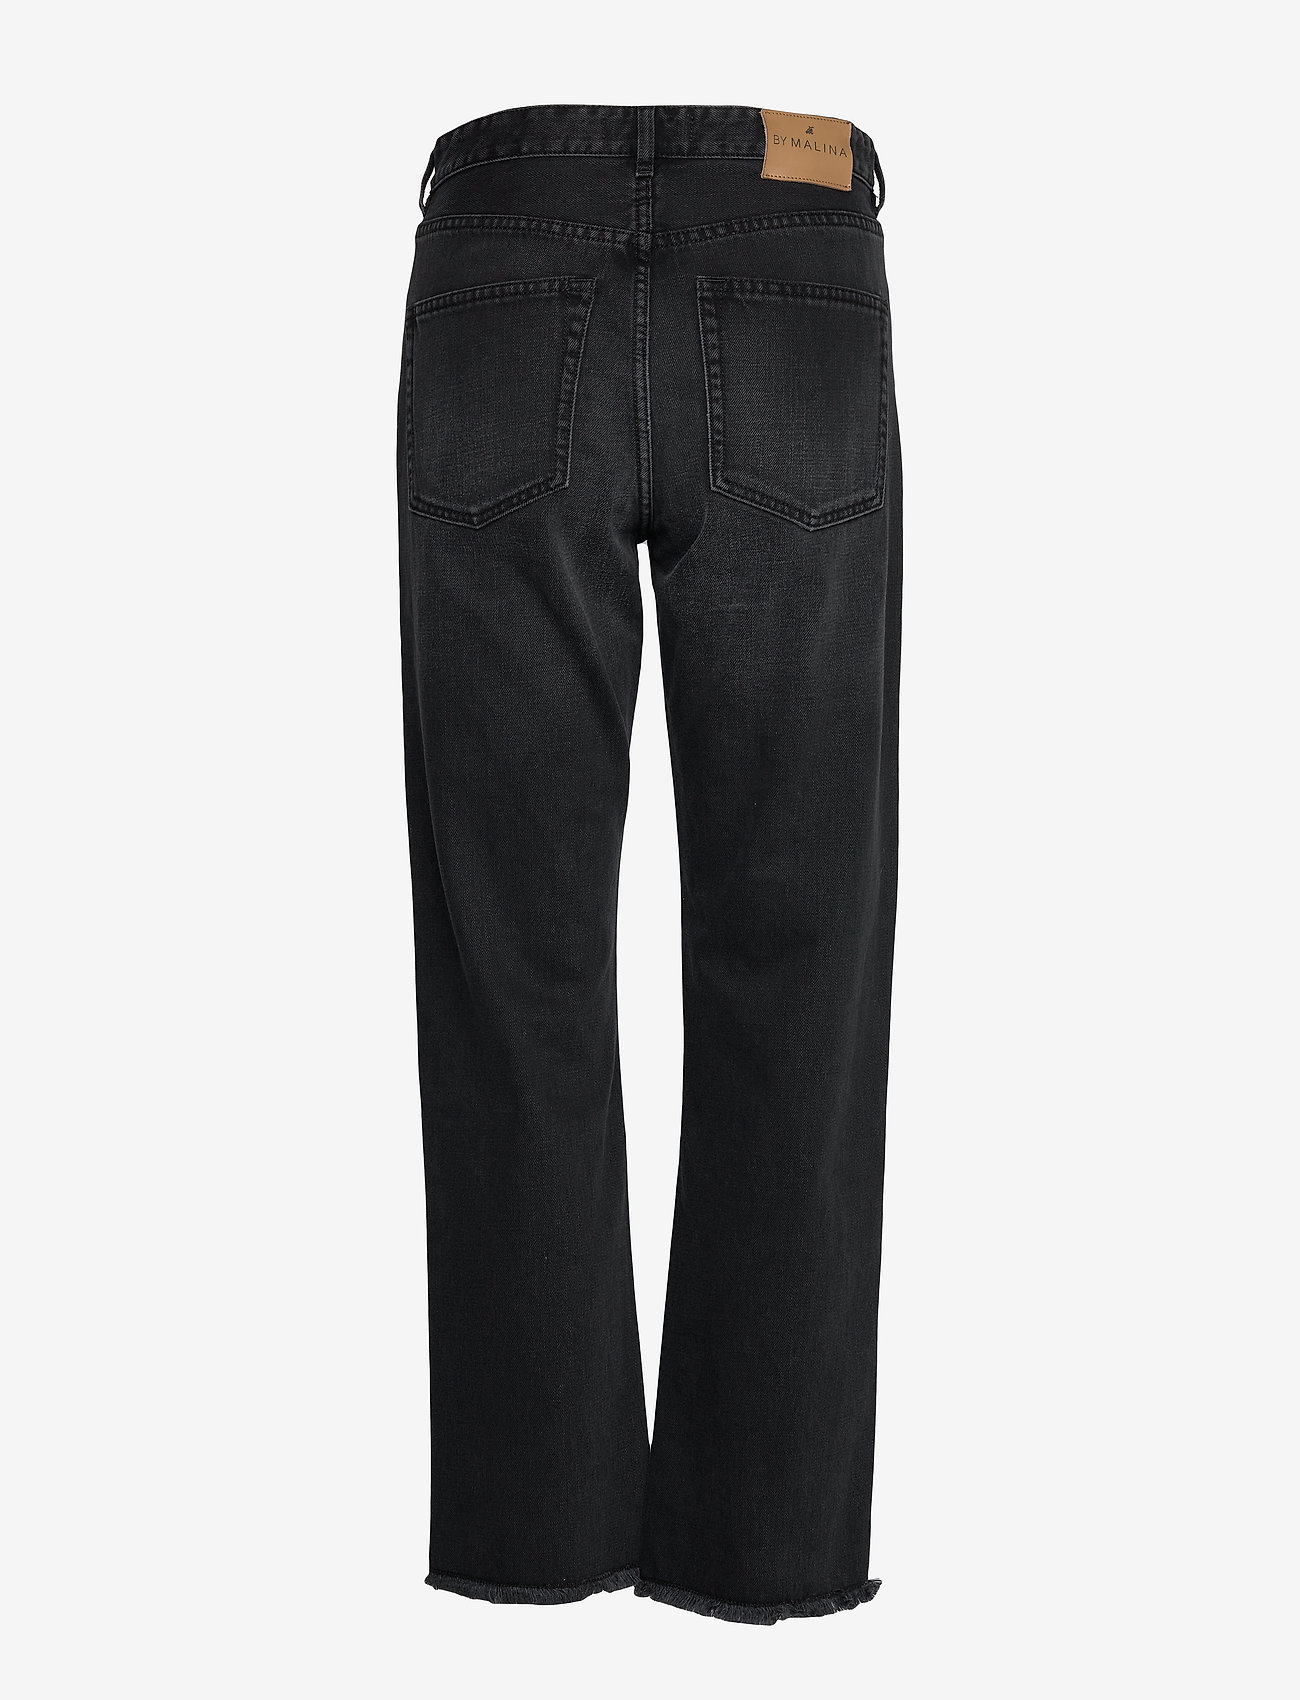 Malina - Alexa high-rise denim jeans - sirge säärega teksad - black - 1